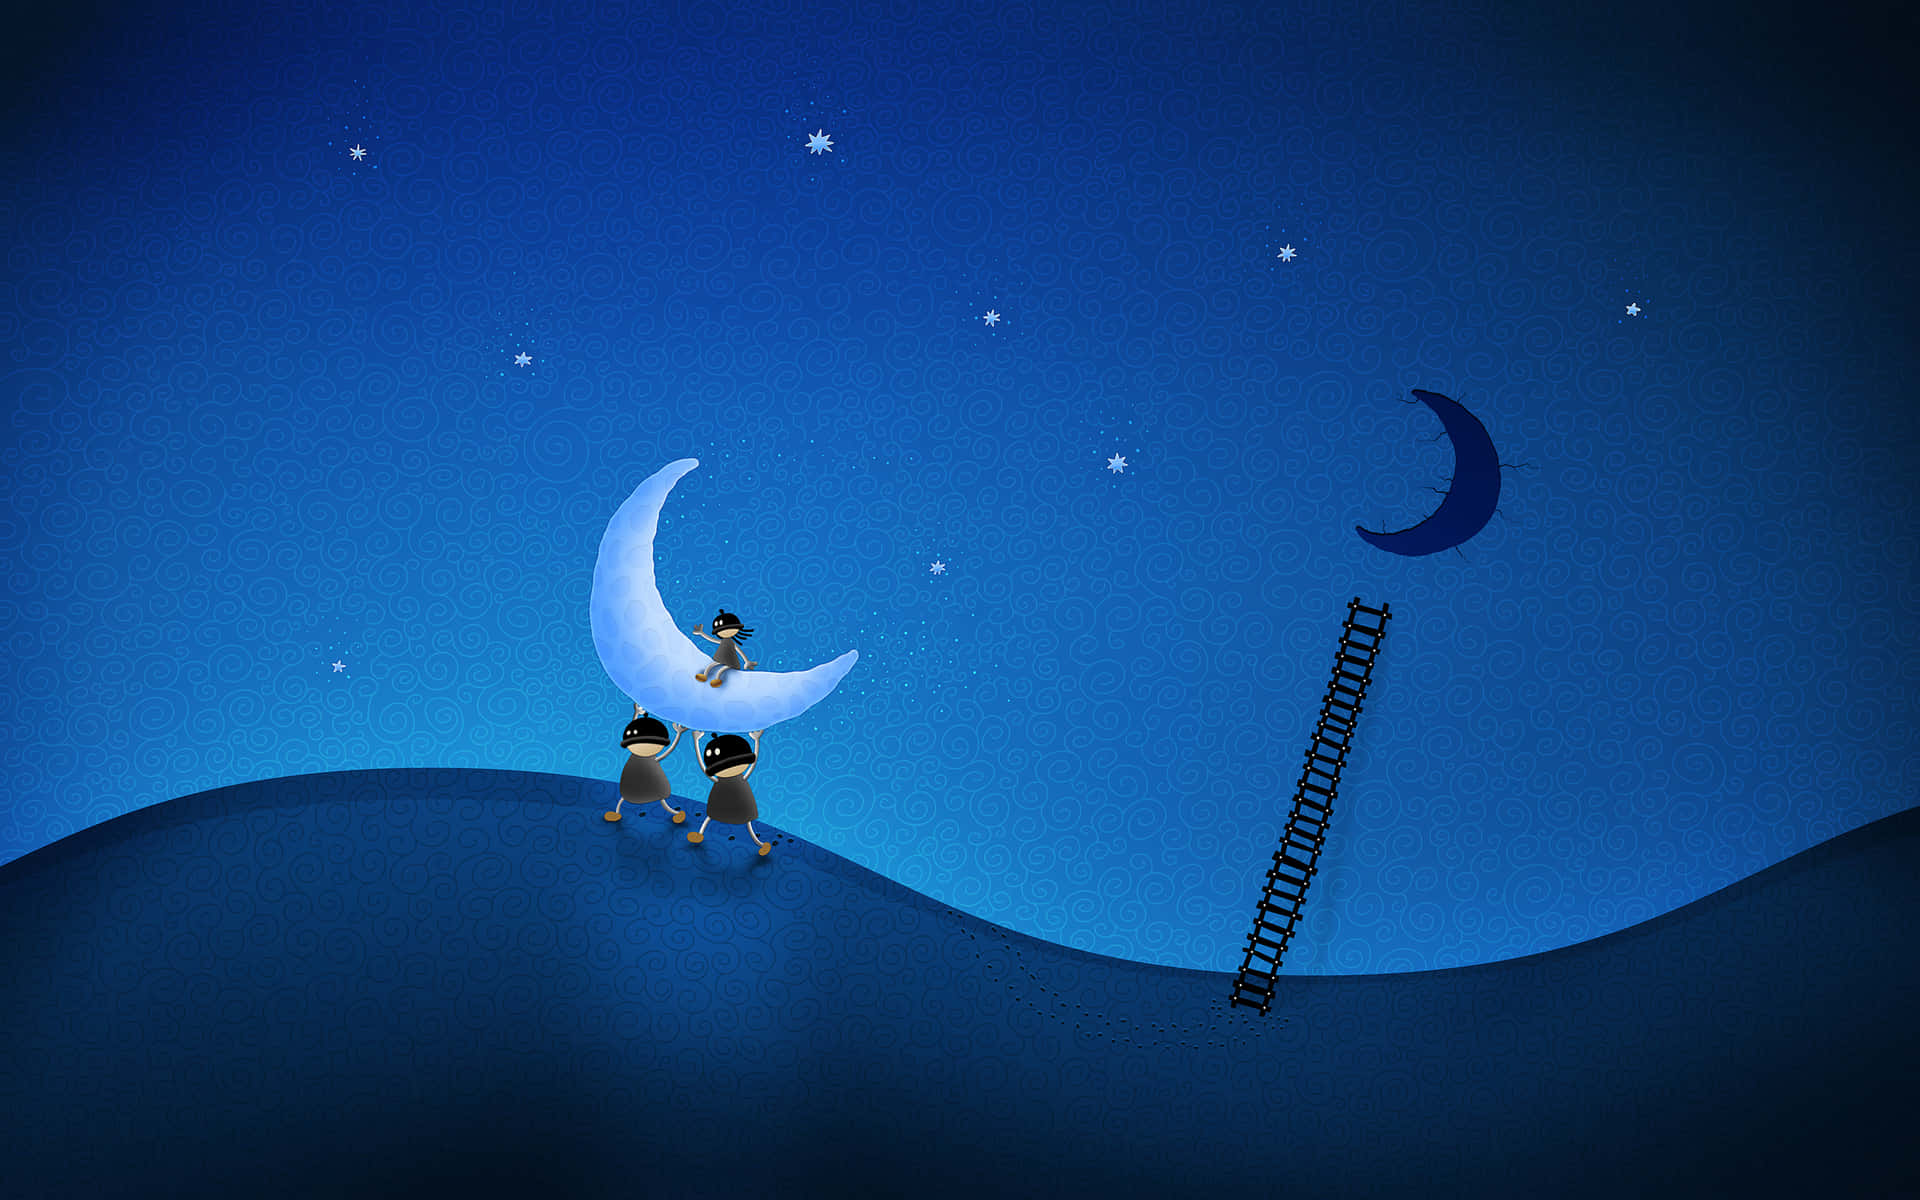 Lad dine drømme komme til live i månelyset. Wallpaper